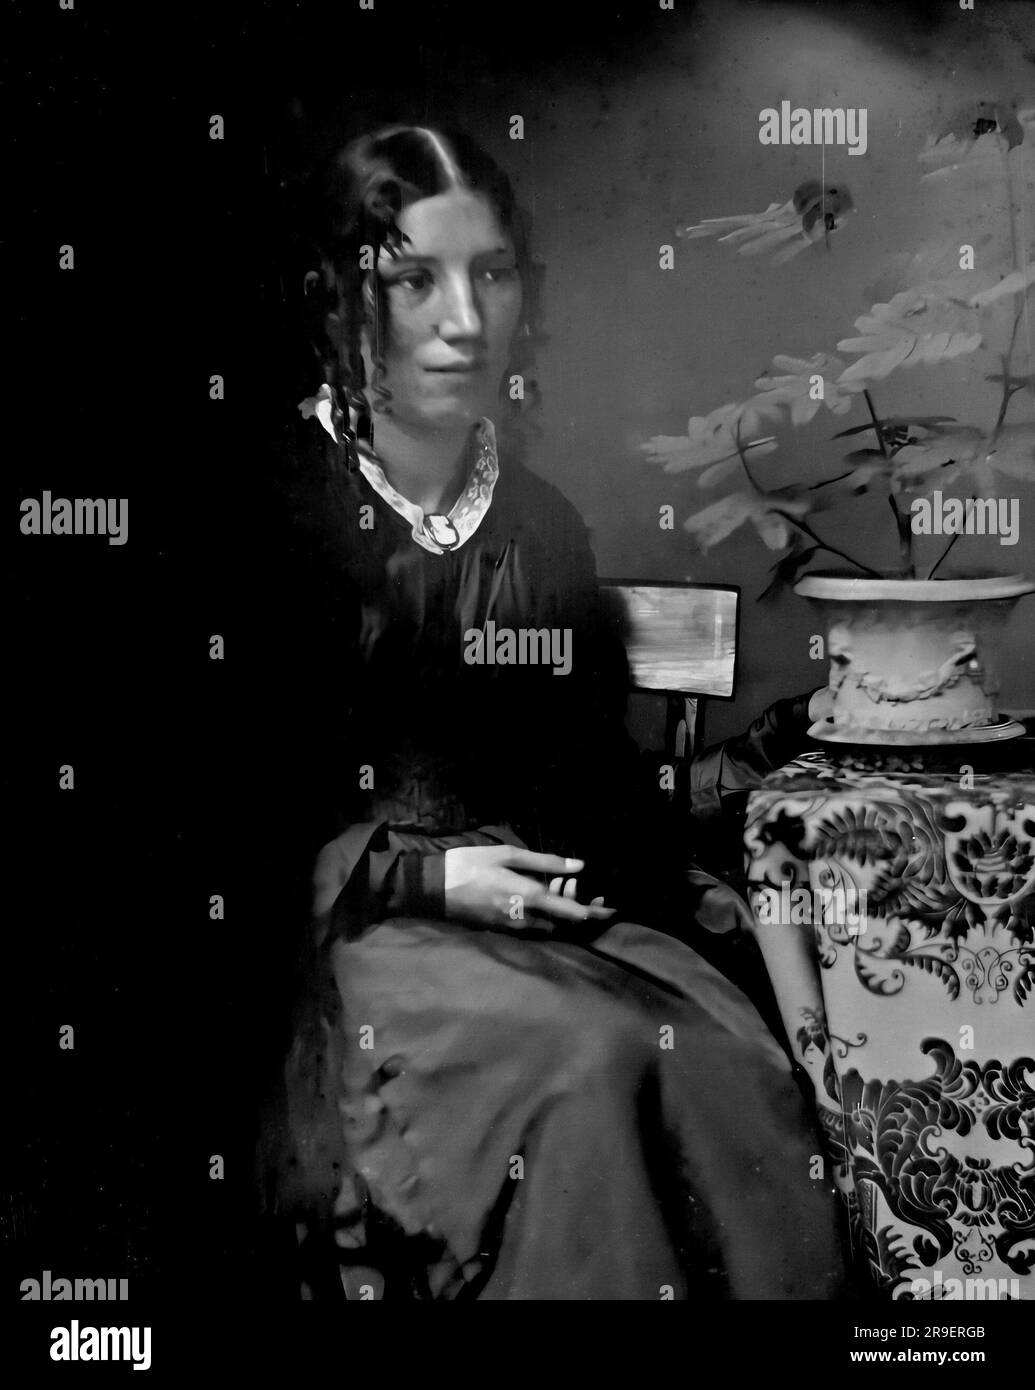 Harriet Beecher Stowe (1811-1896), portrait de daguerrotype, c. 1852. Harriet Beecher Stowe était un écrivain et abolitionniste américain, plus célèbre pour son roman "Uncle Tom's Cabin" publié en 1852. Banque D'Images